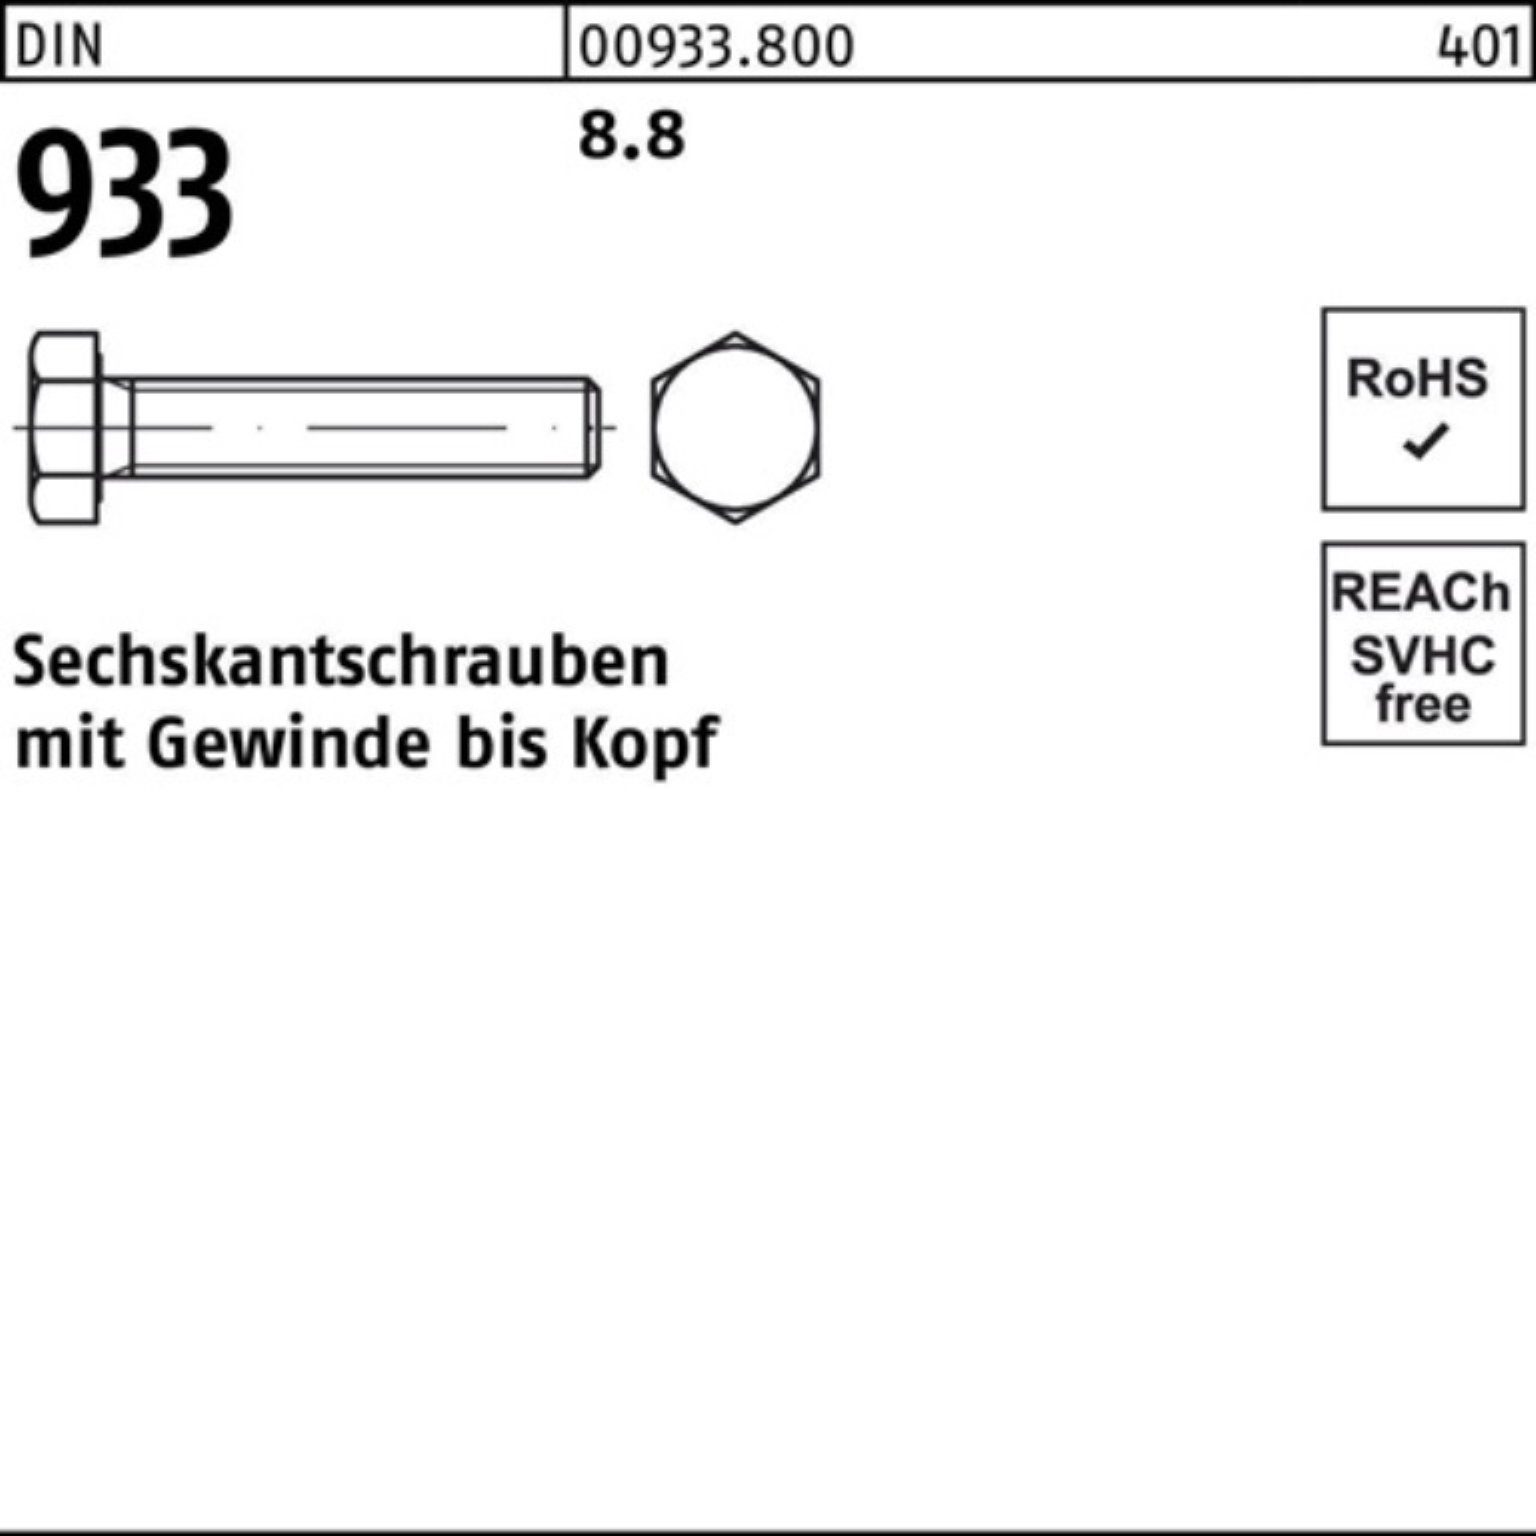 Reyher Sechskantschraube 100er Pack Sechskantschraube DIN 8.8 1 M24x Stück VG 200 DIN 933 933